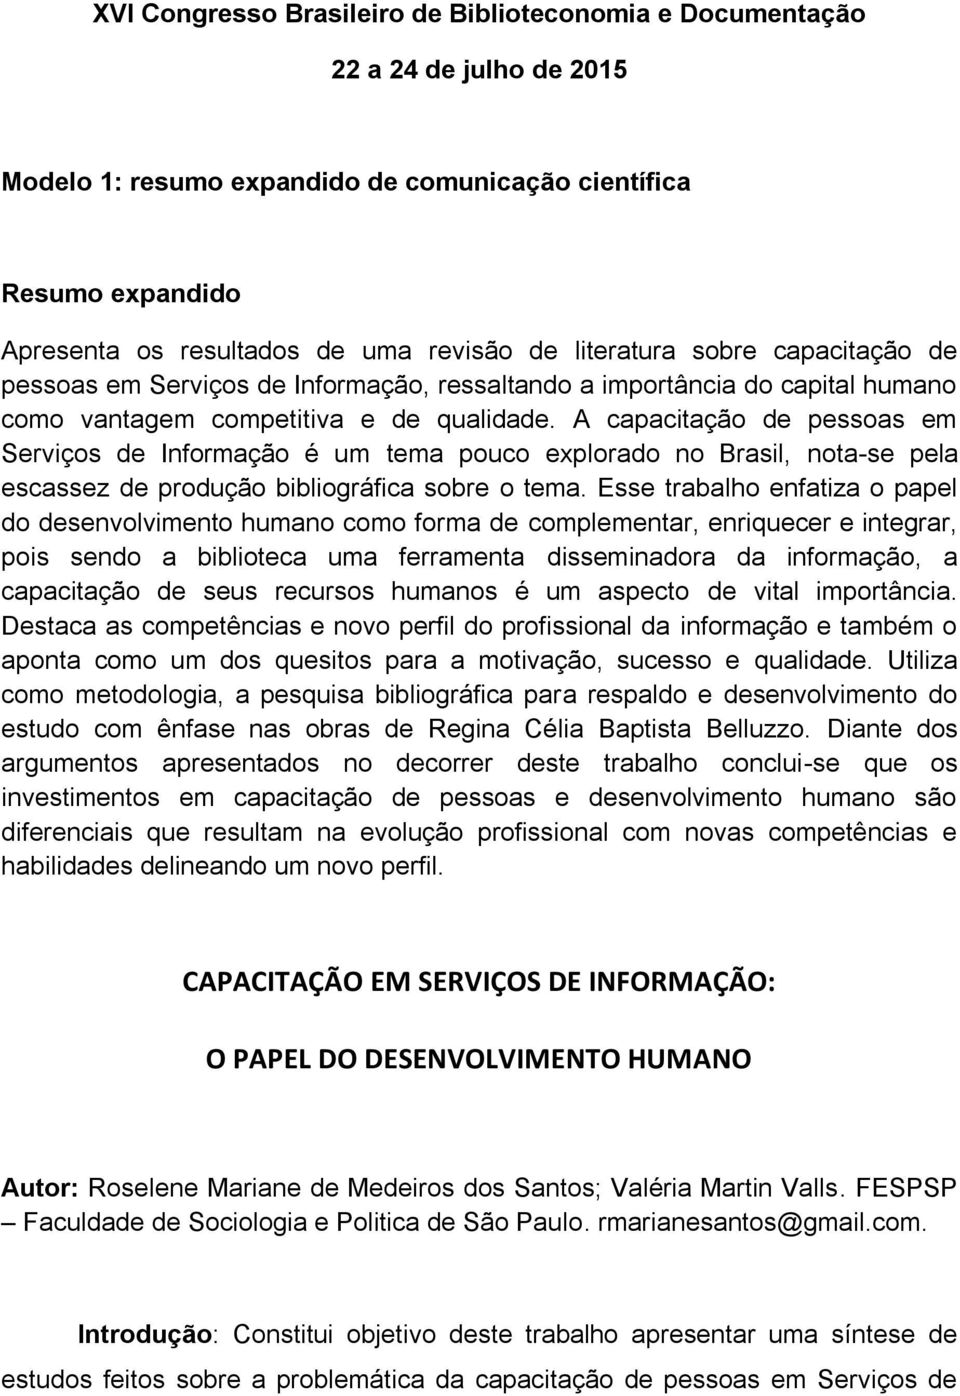 A capacitação de pessoas em Serviços de Informação é um tema pouco explorado no Brasil, nota-se pela escassez de produção bibliográfica sobre o tema.